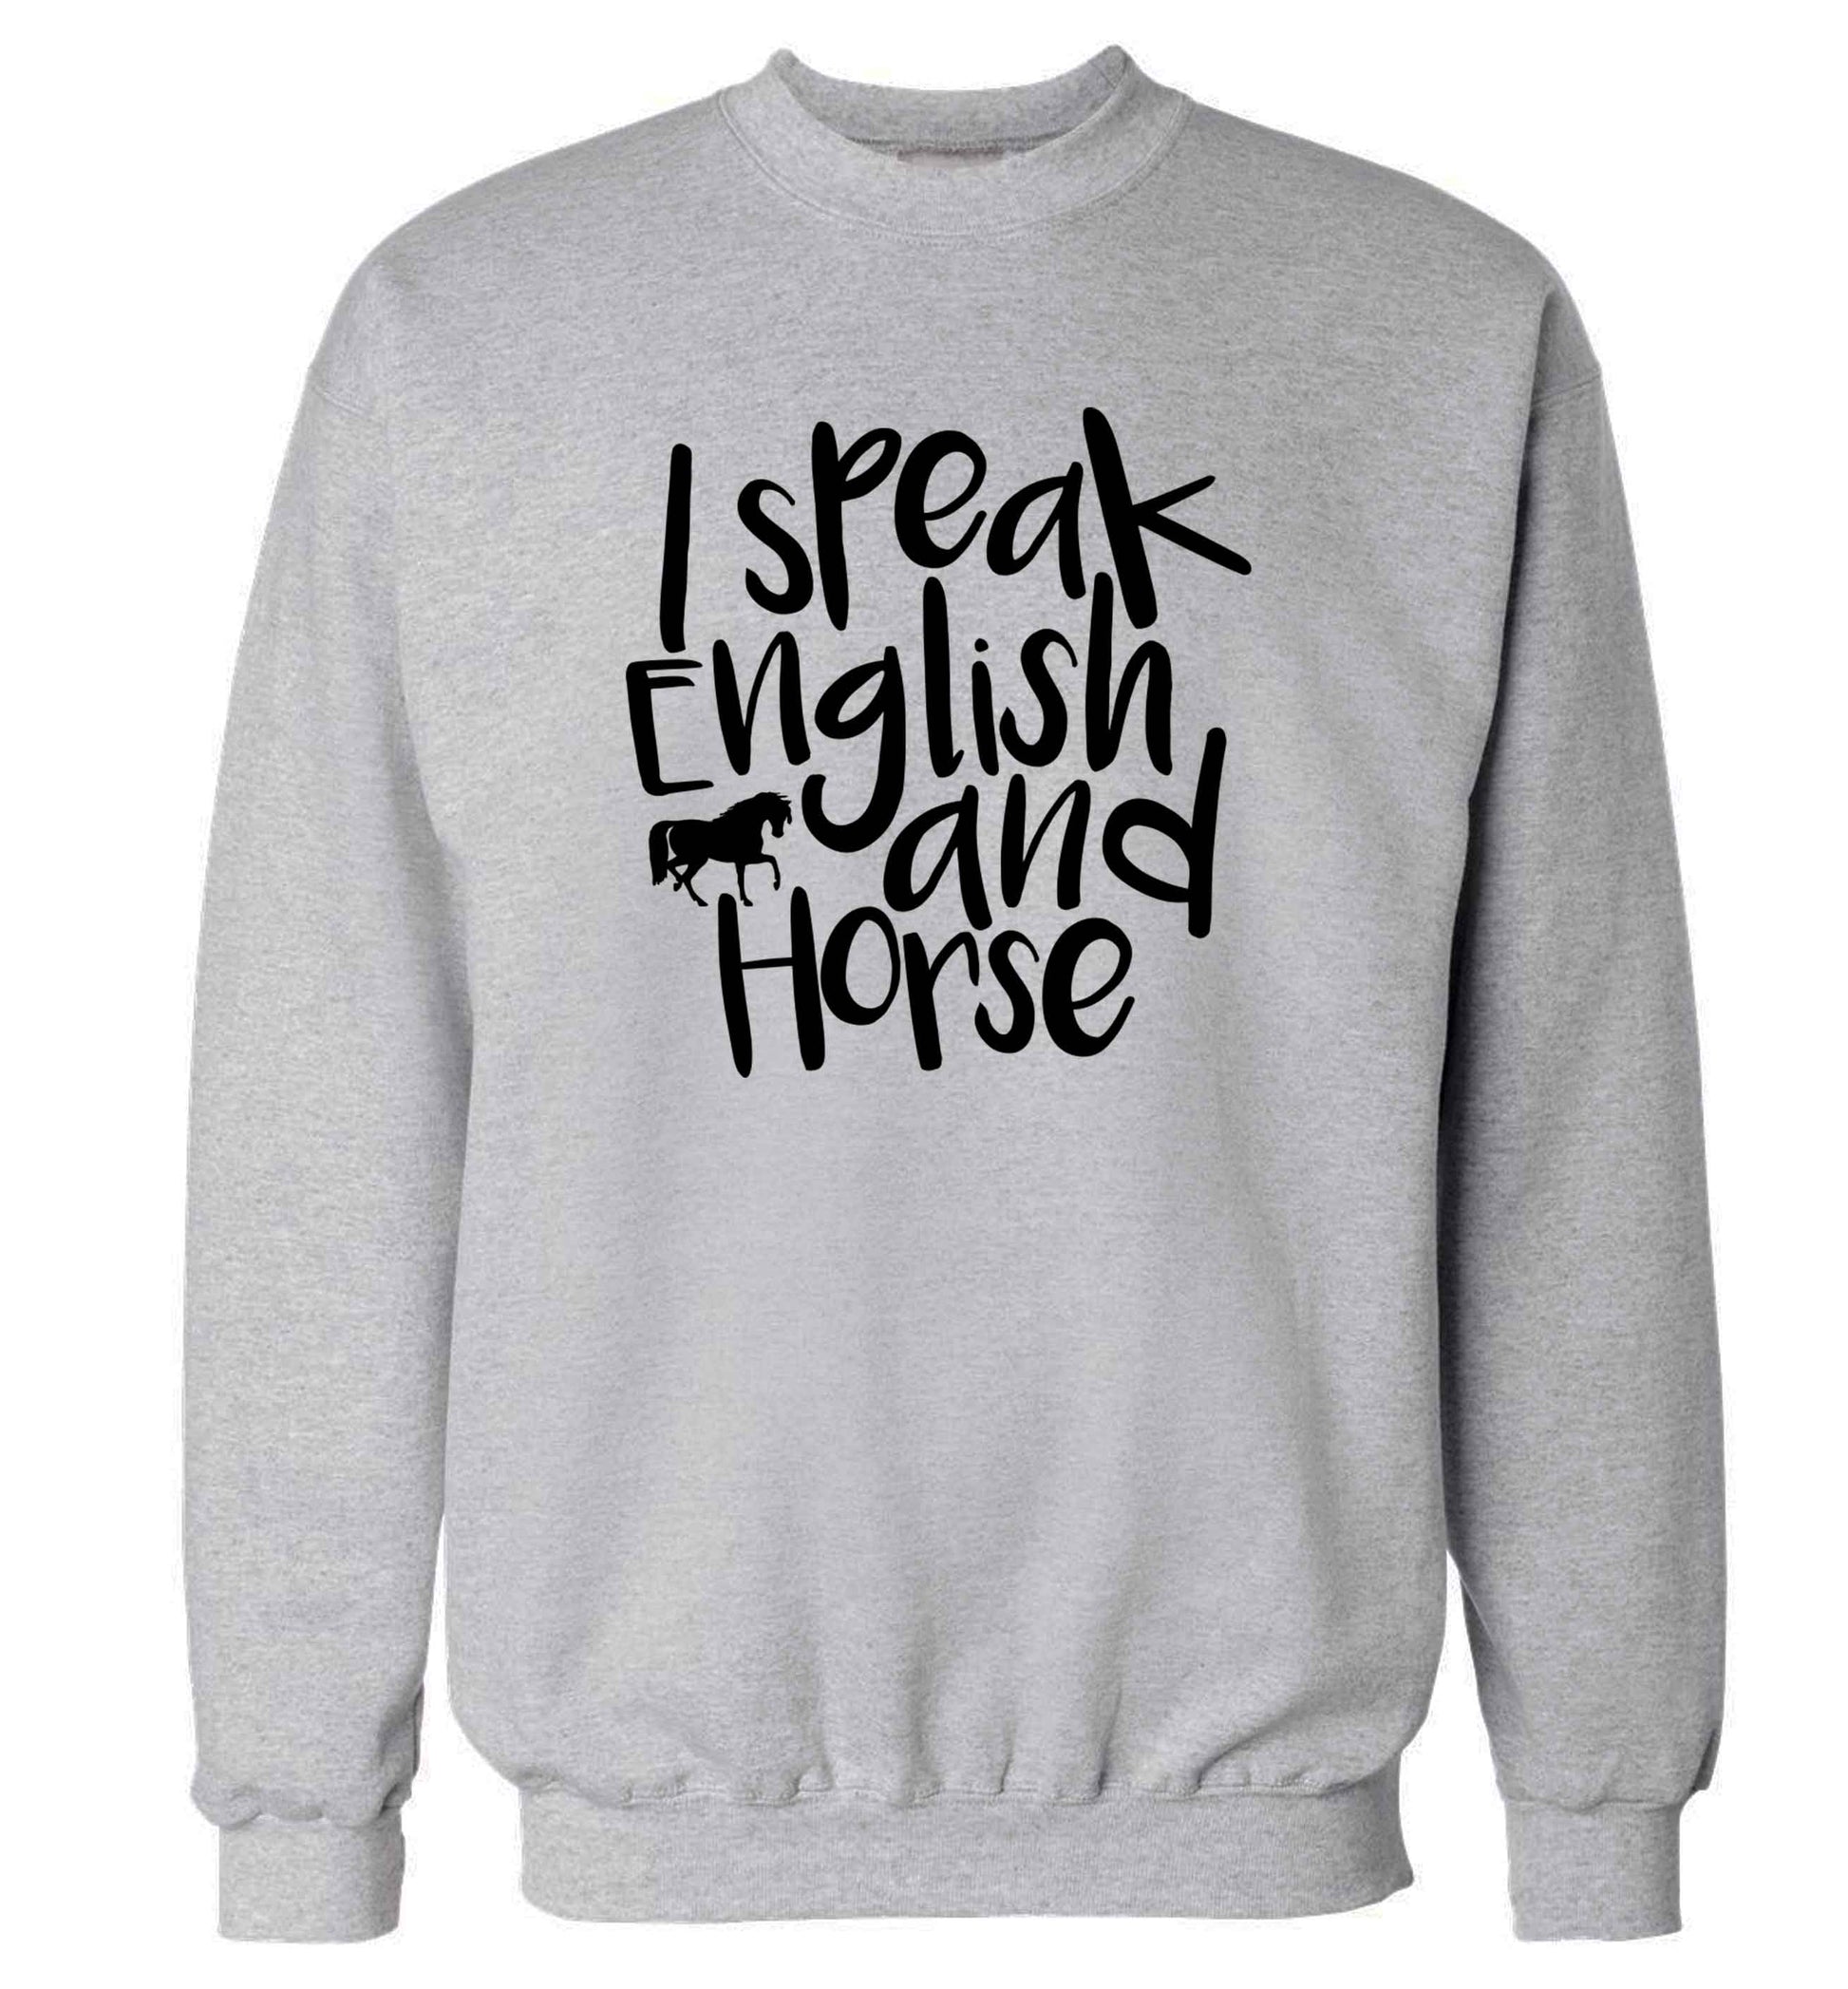 I speak English and horse adult's unisex grey sweater 2XL